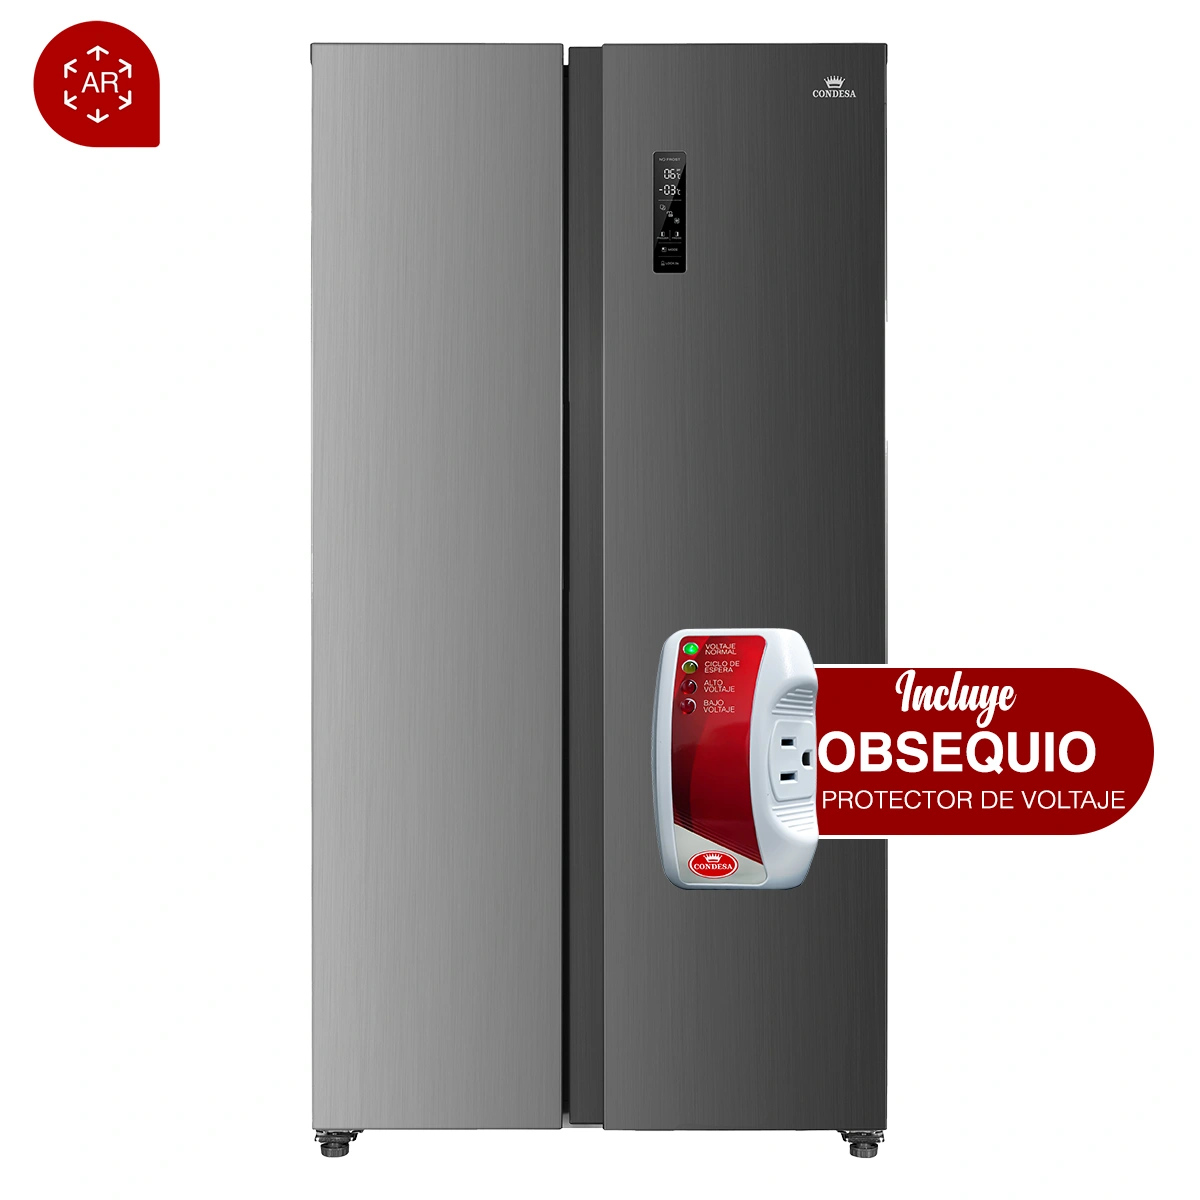 Refrigerador side by side con realidad aumentada + regalo